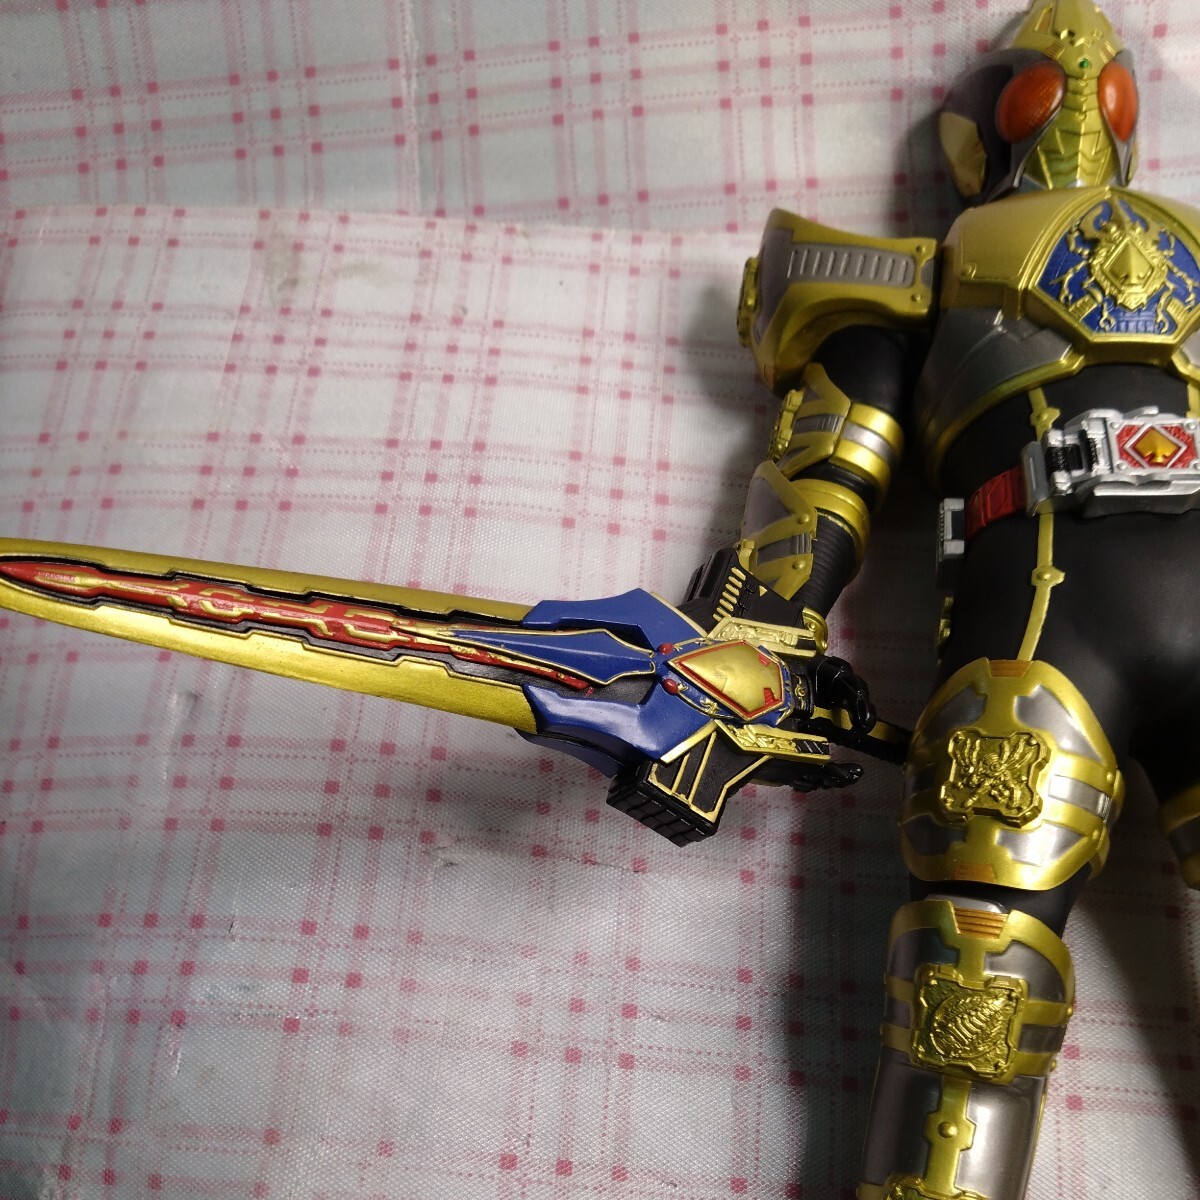  Kamen Rider Blade big size figure 2.